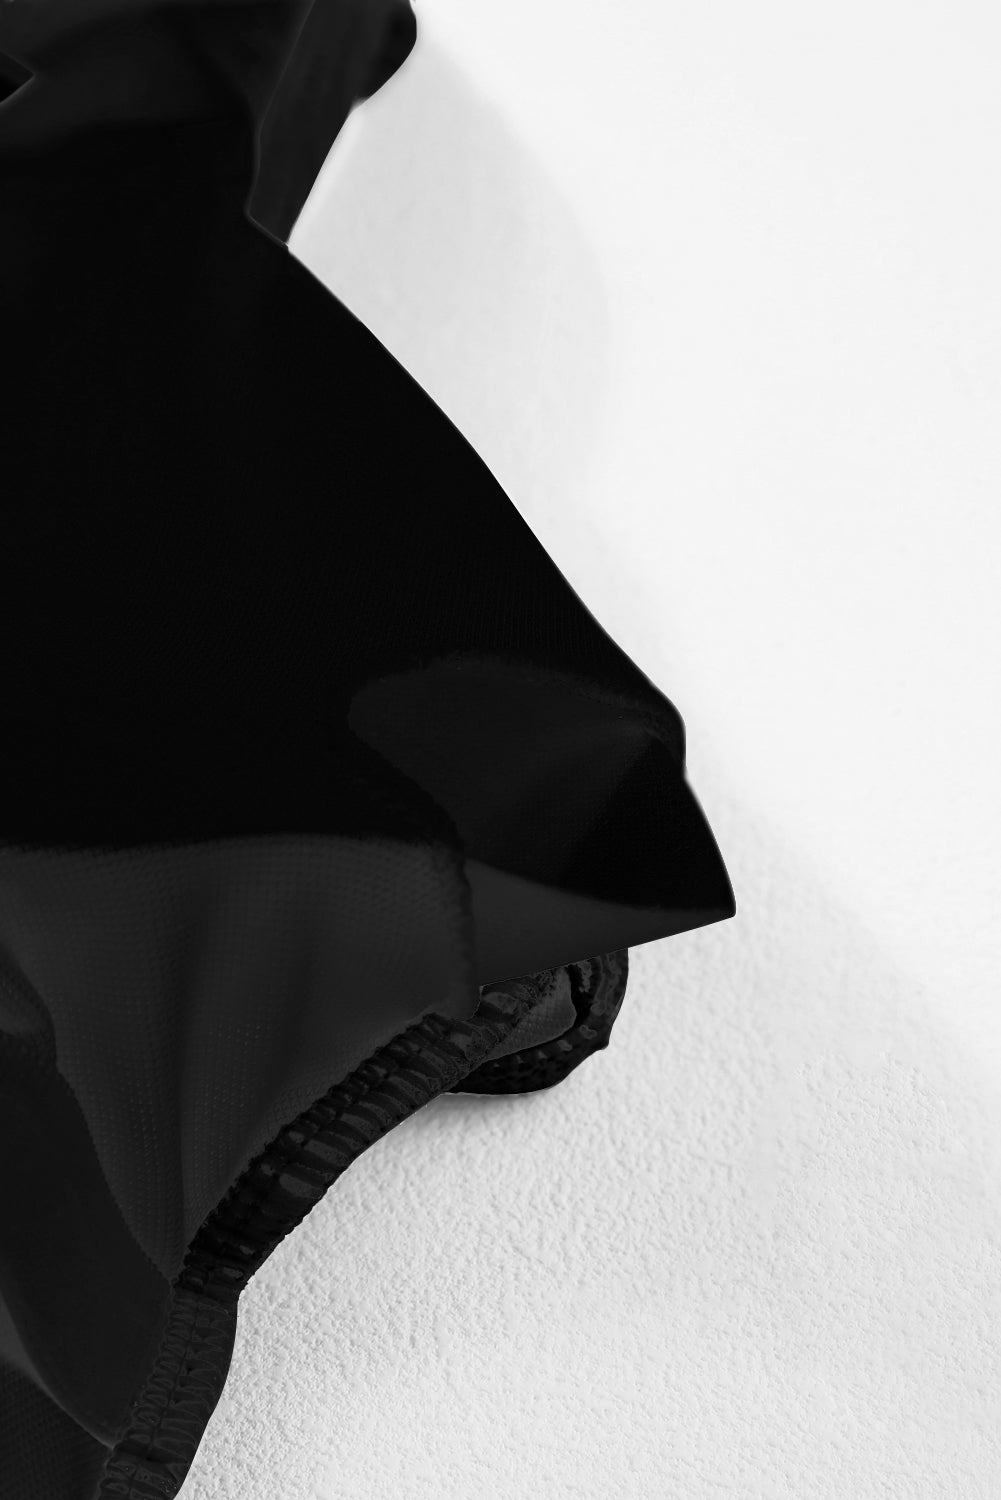 Črne enodelne kopalke z rebrasto teksturo in okroglim izrezom